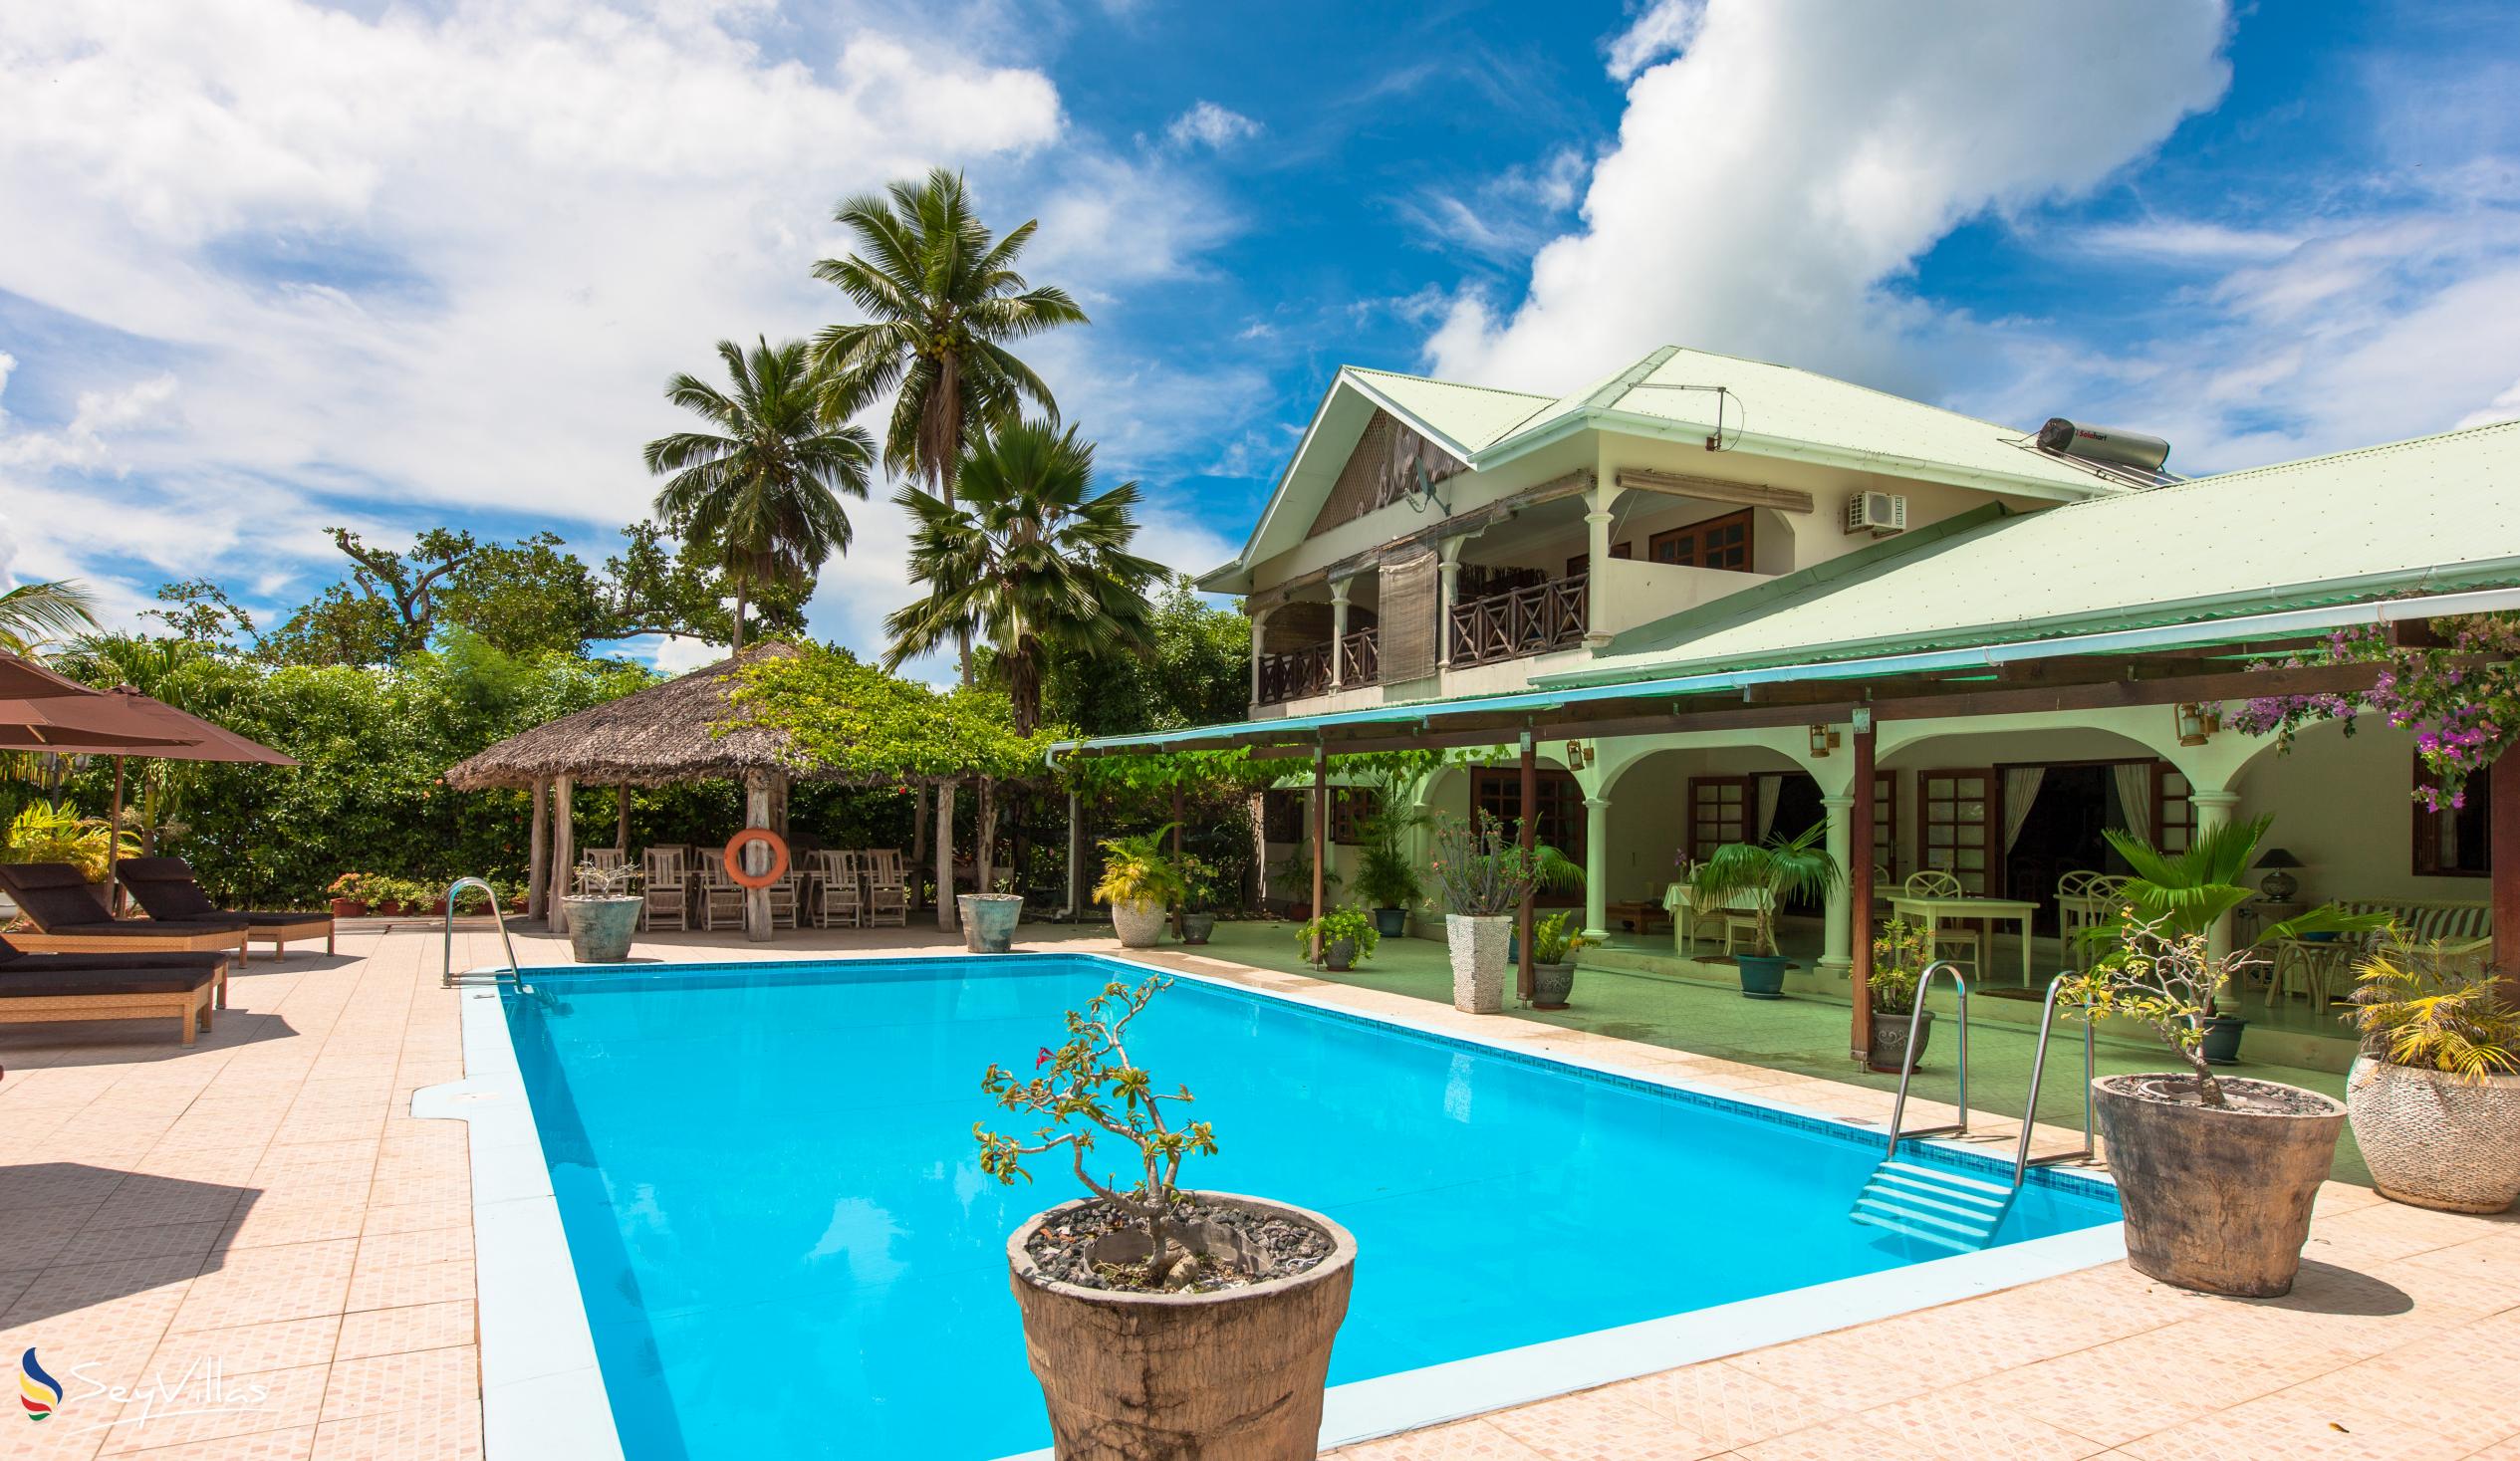 Foto 4: Villa de Cerf - Aussenbereich - Cerf Island (Seychellen)